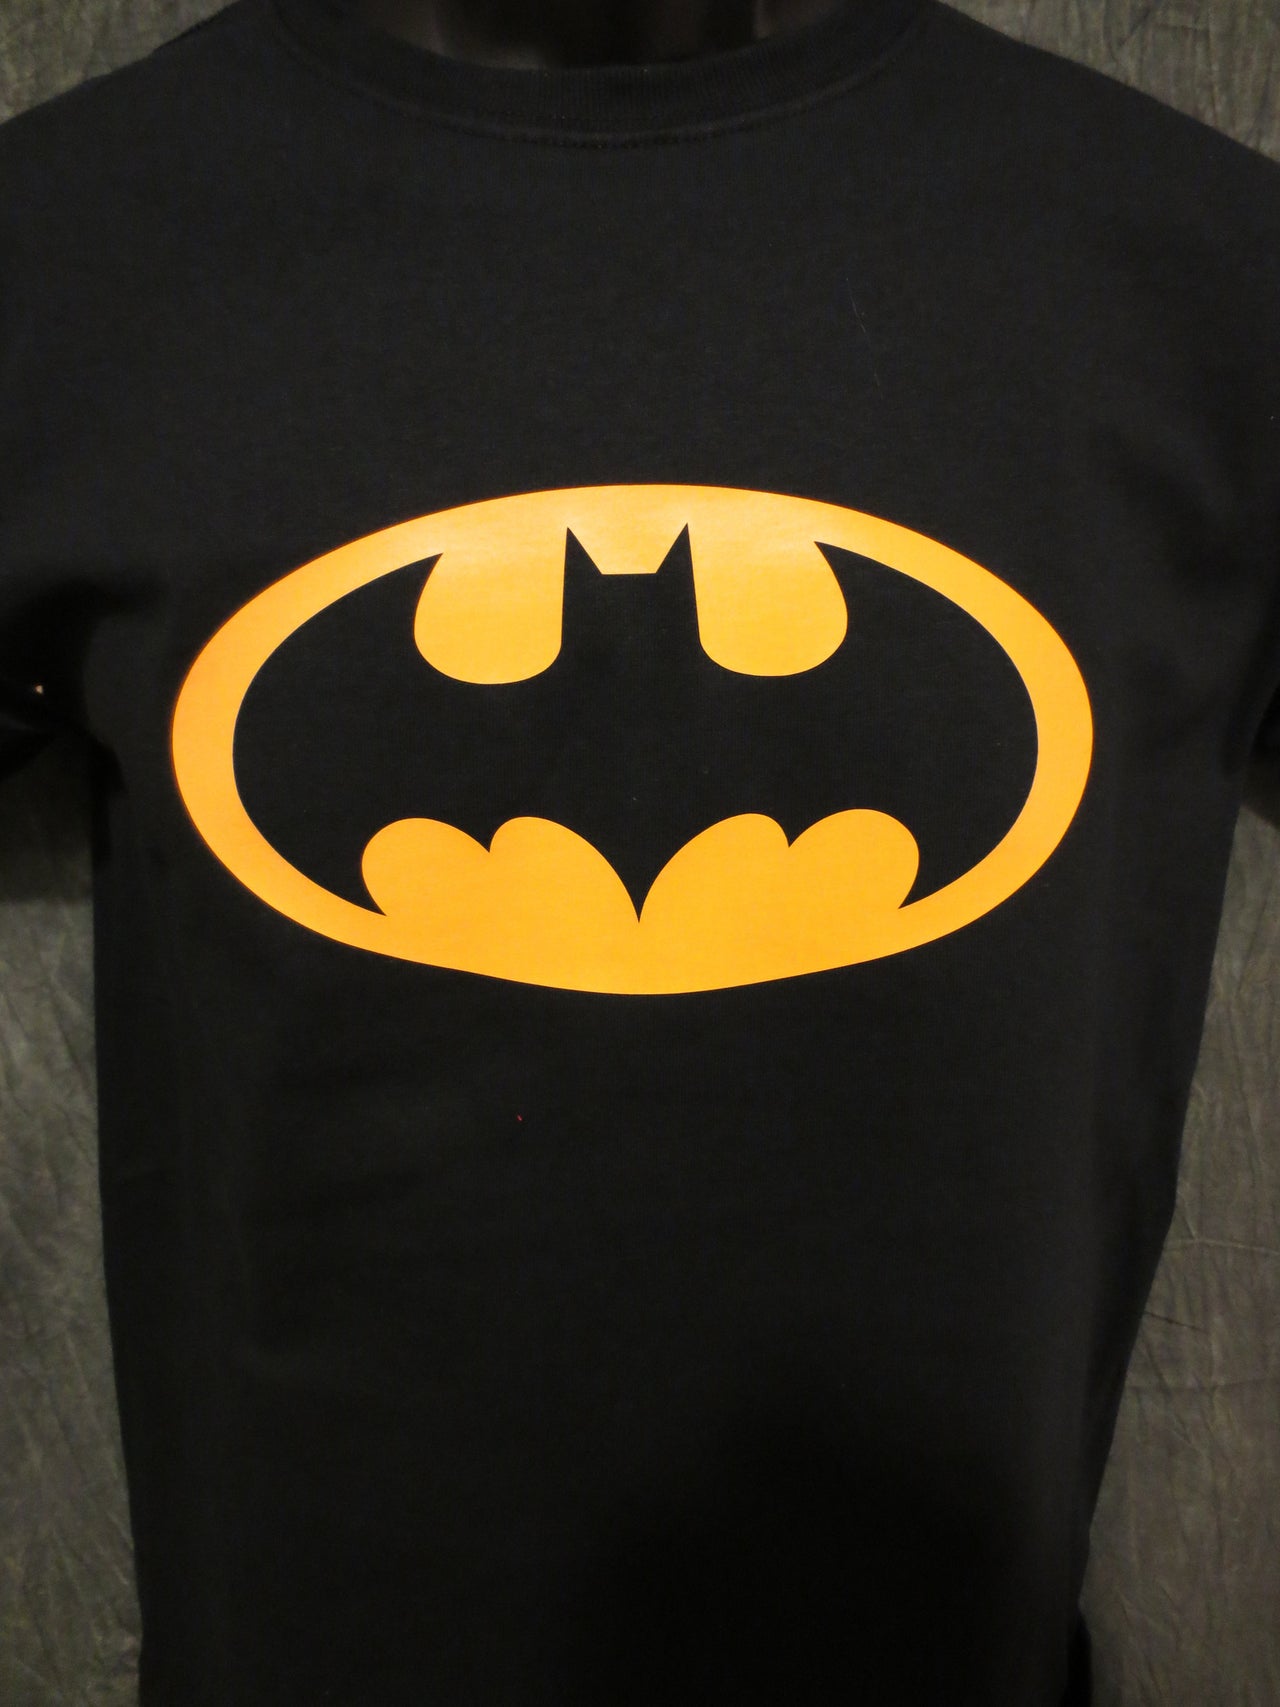 Batman Classic Logo Youth Size Tshirt - TshirtNow.net - 2